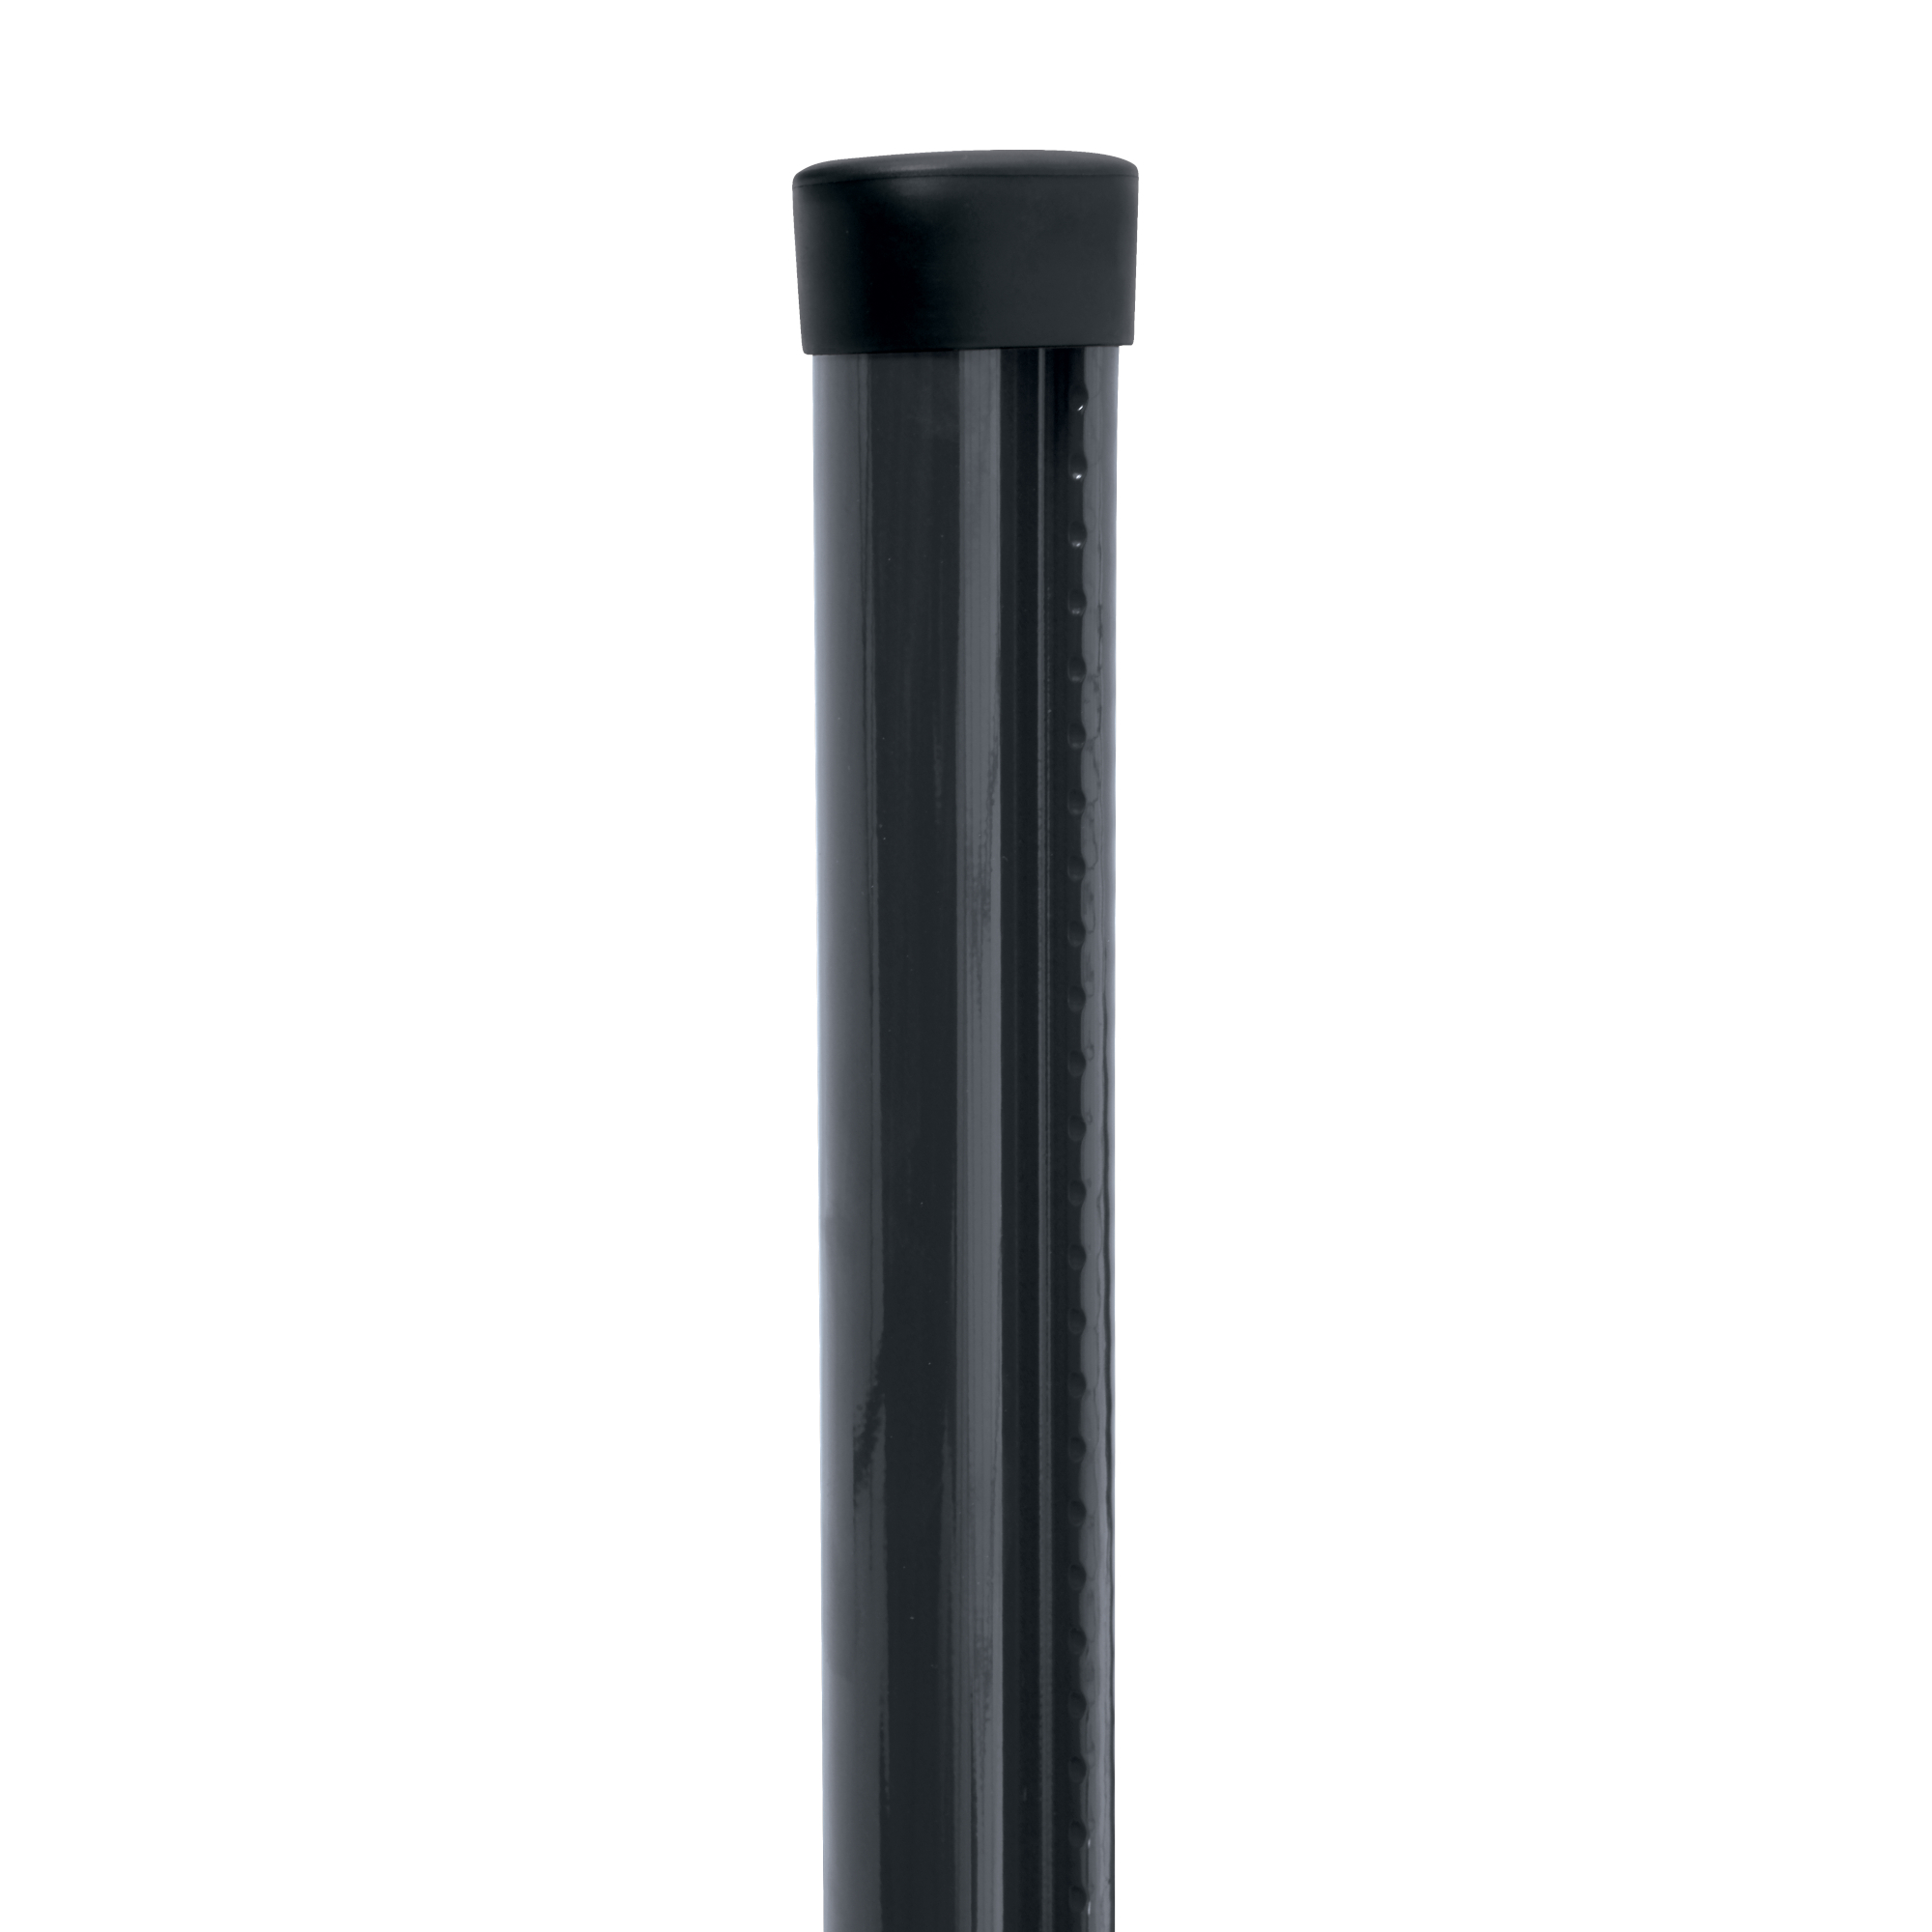 Sloupek kulatý s montážní lištou Pilclip Zn + PVC antracit průměr 48 mm výška 2